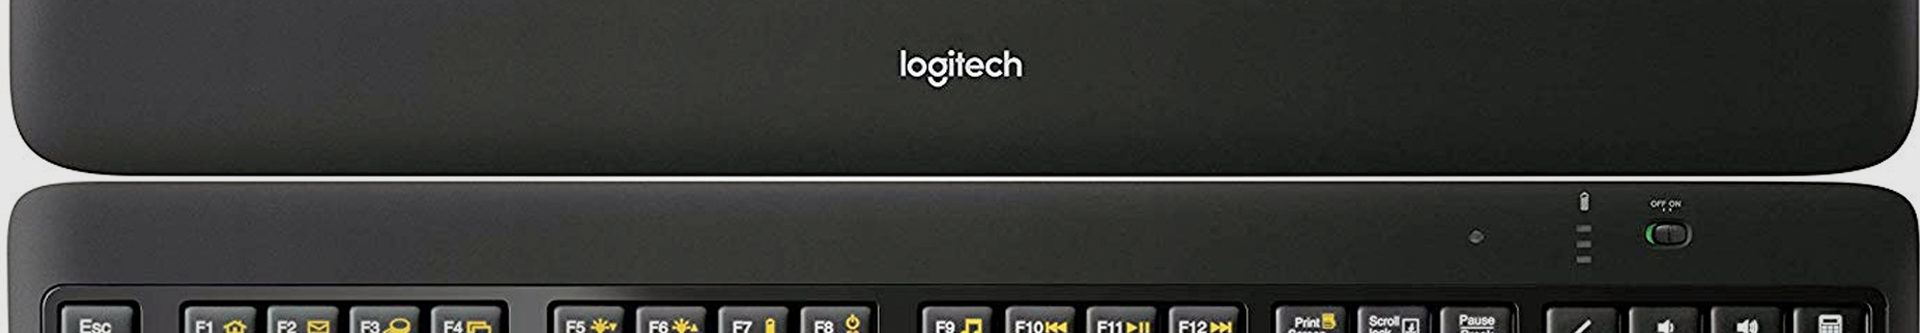 logitech wireless illuminated keyboard K800